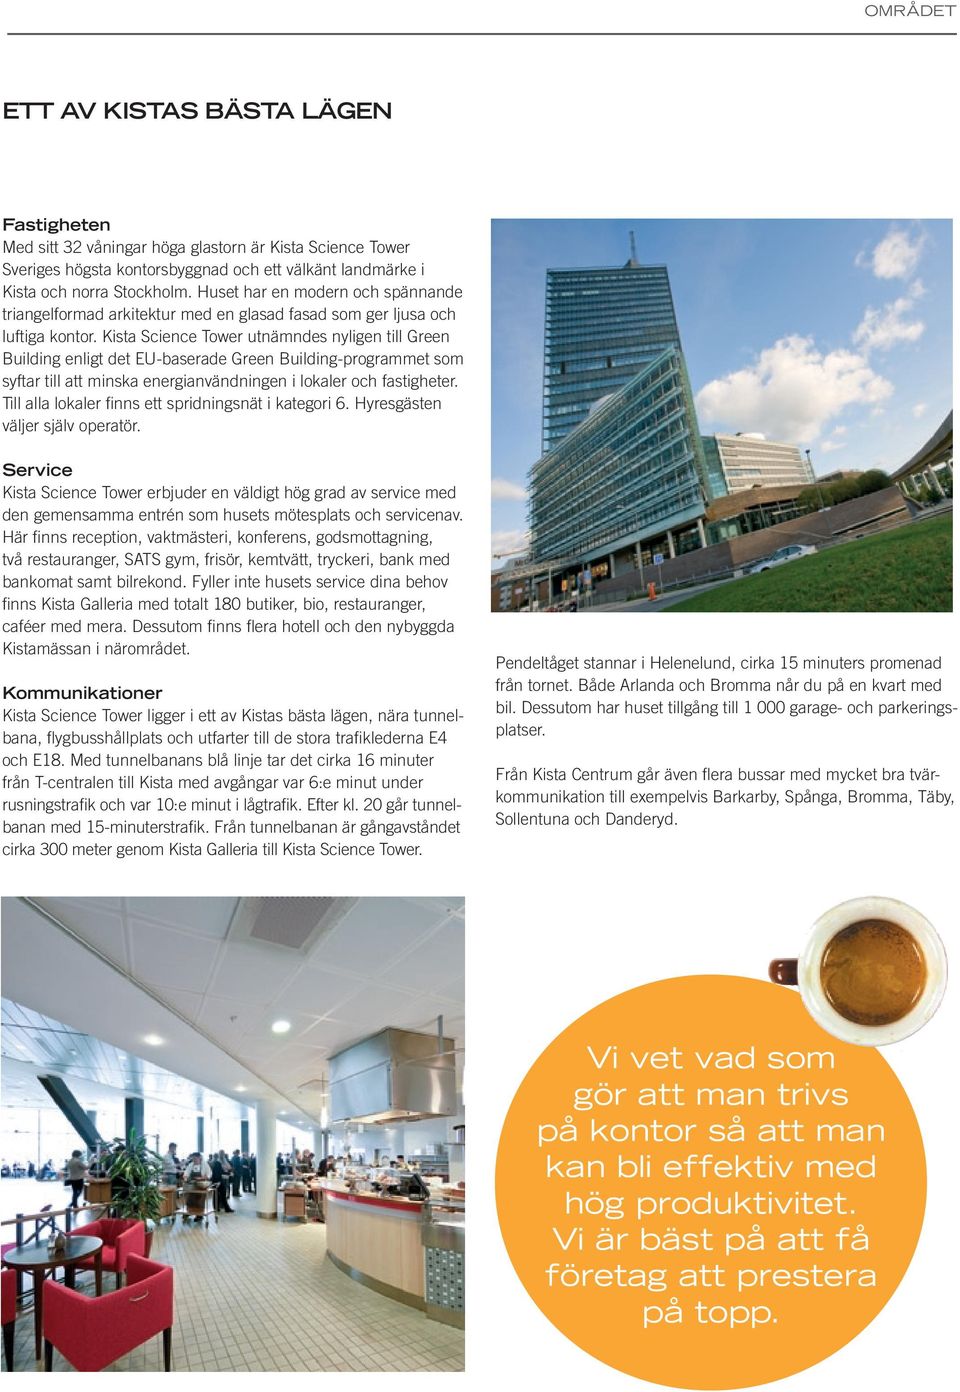 Kista Science Tower utnämndes nyligen till Green Building enligt det EU-baserade Green Building-programmet som syftar till att minska energianvändningen i lokaler och fastigheter.